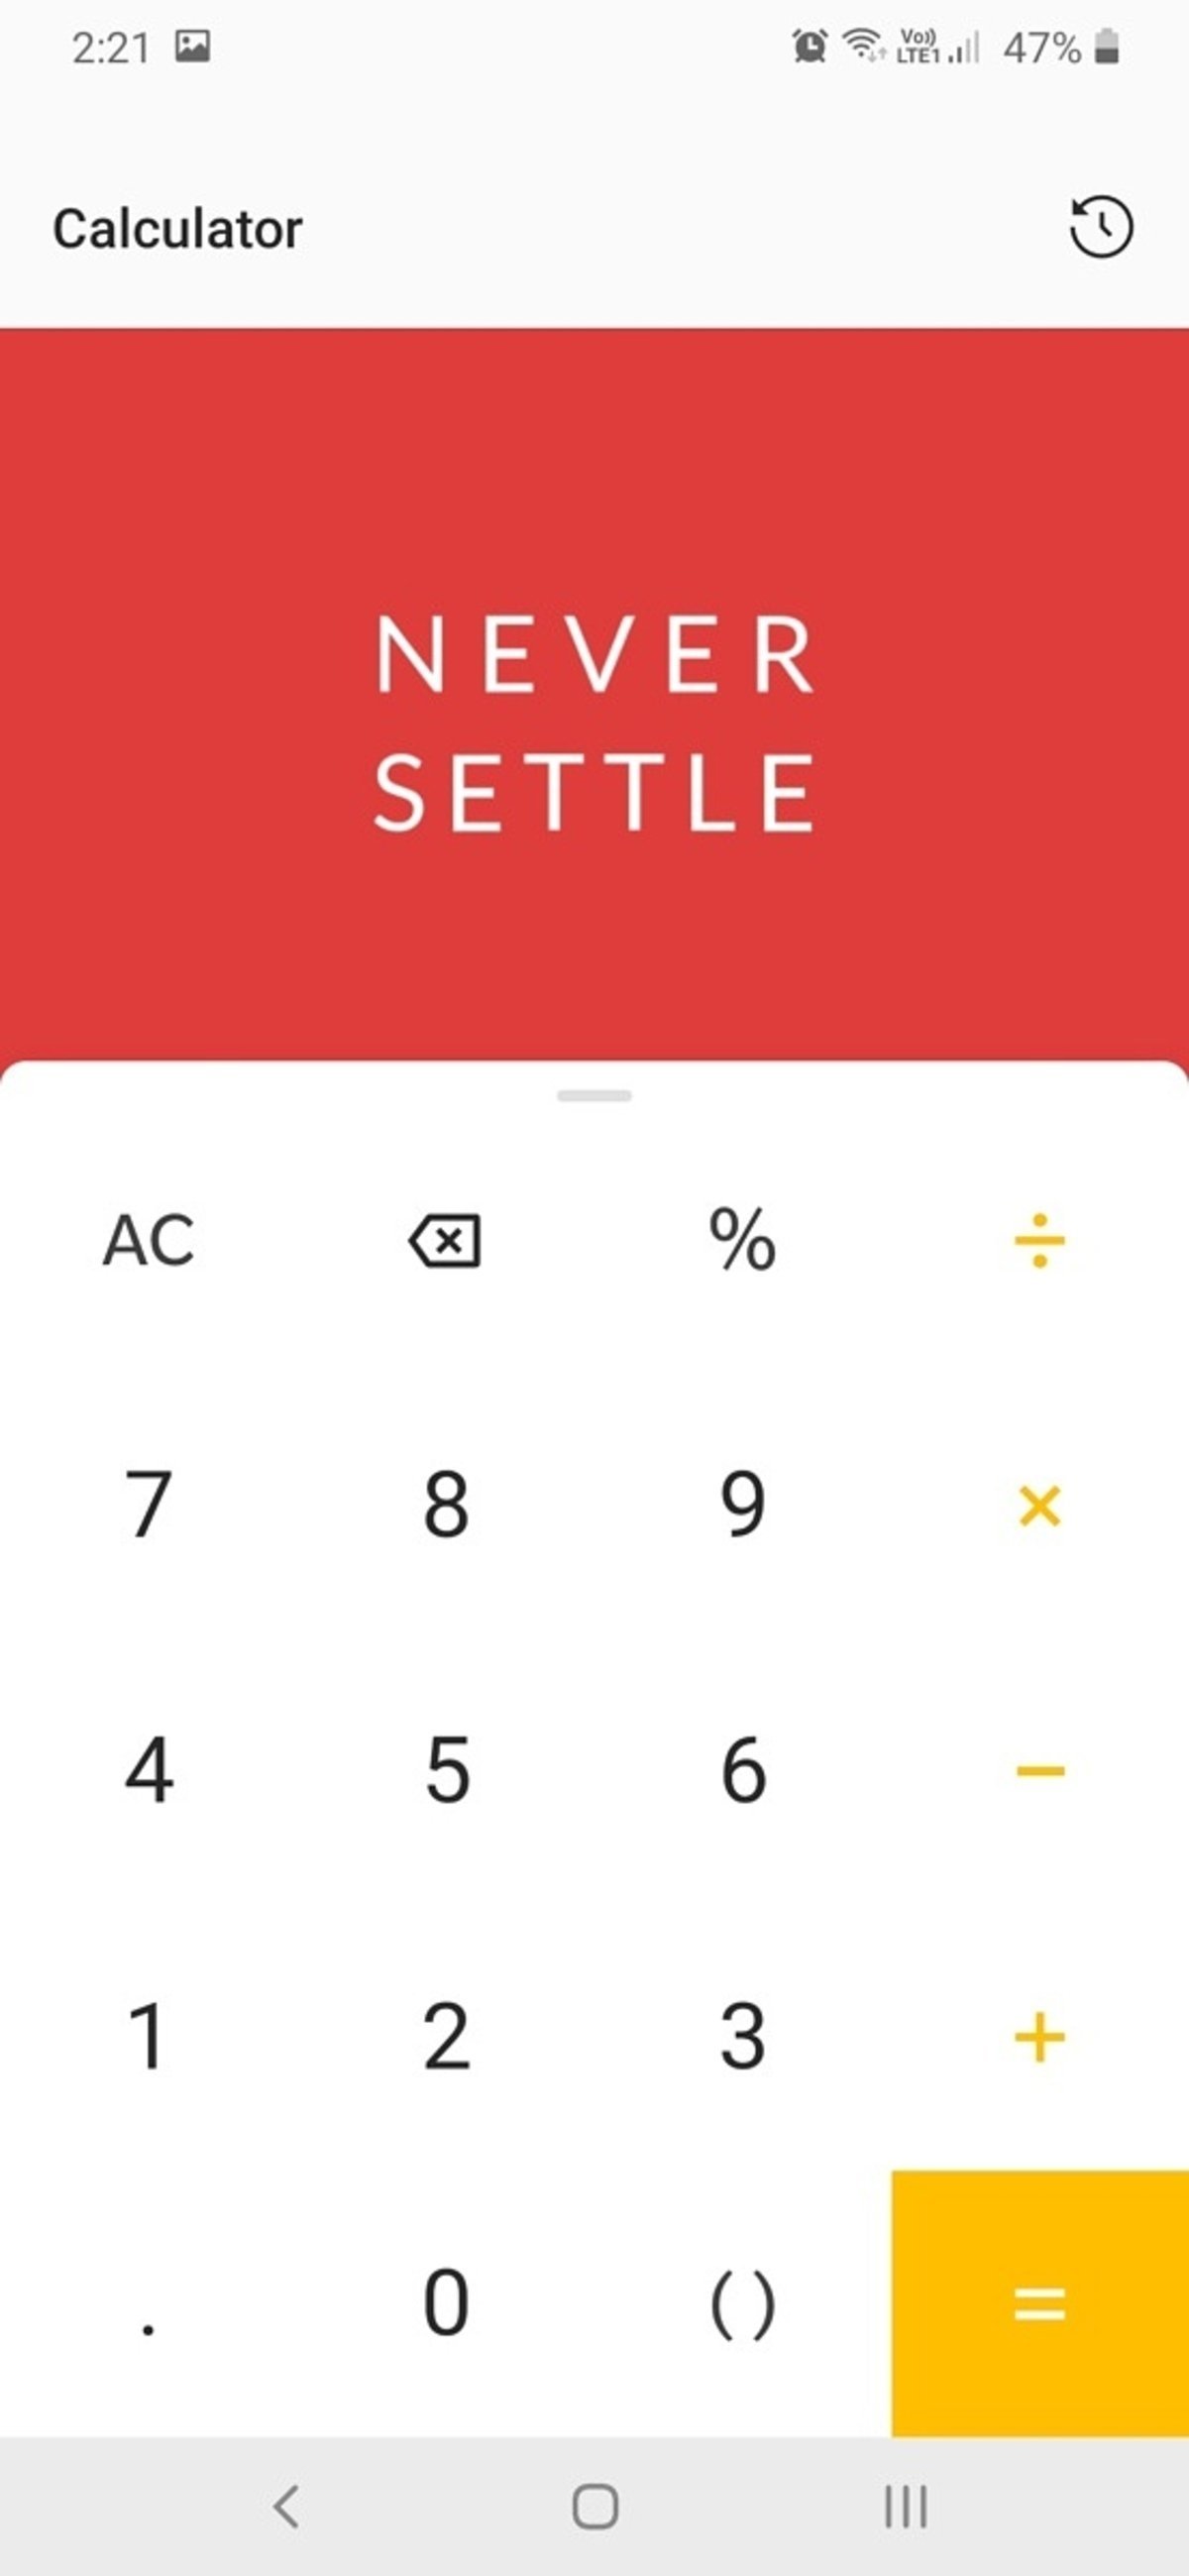 OnePlus-Android-hidden-code-calculator